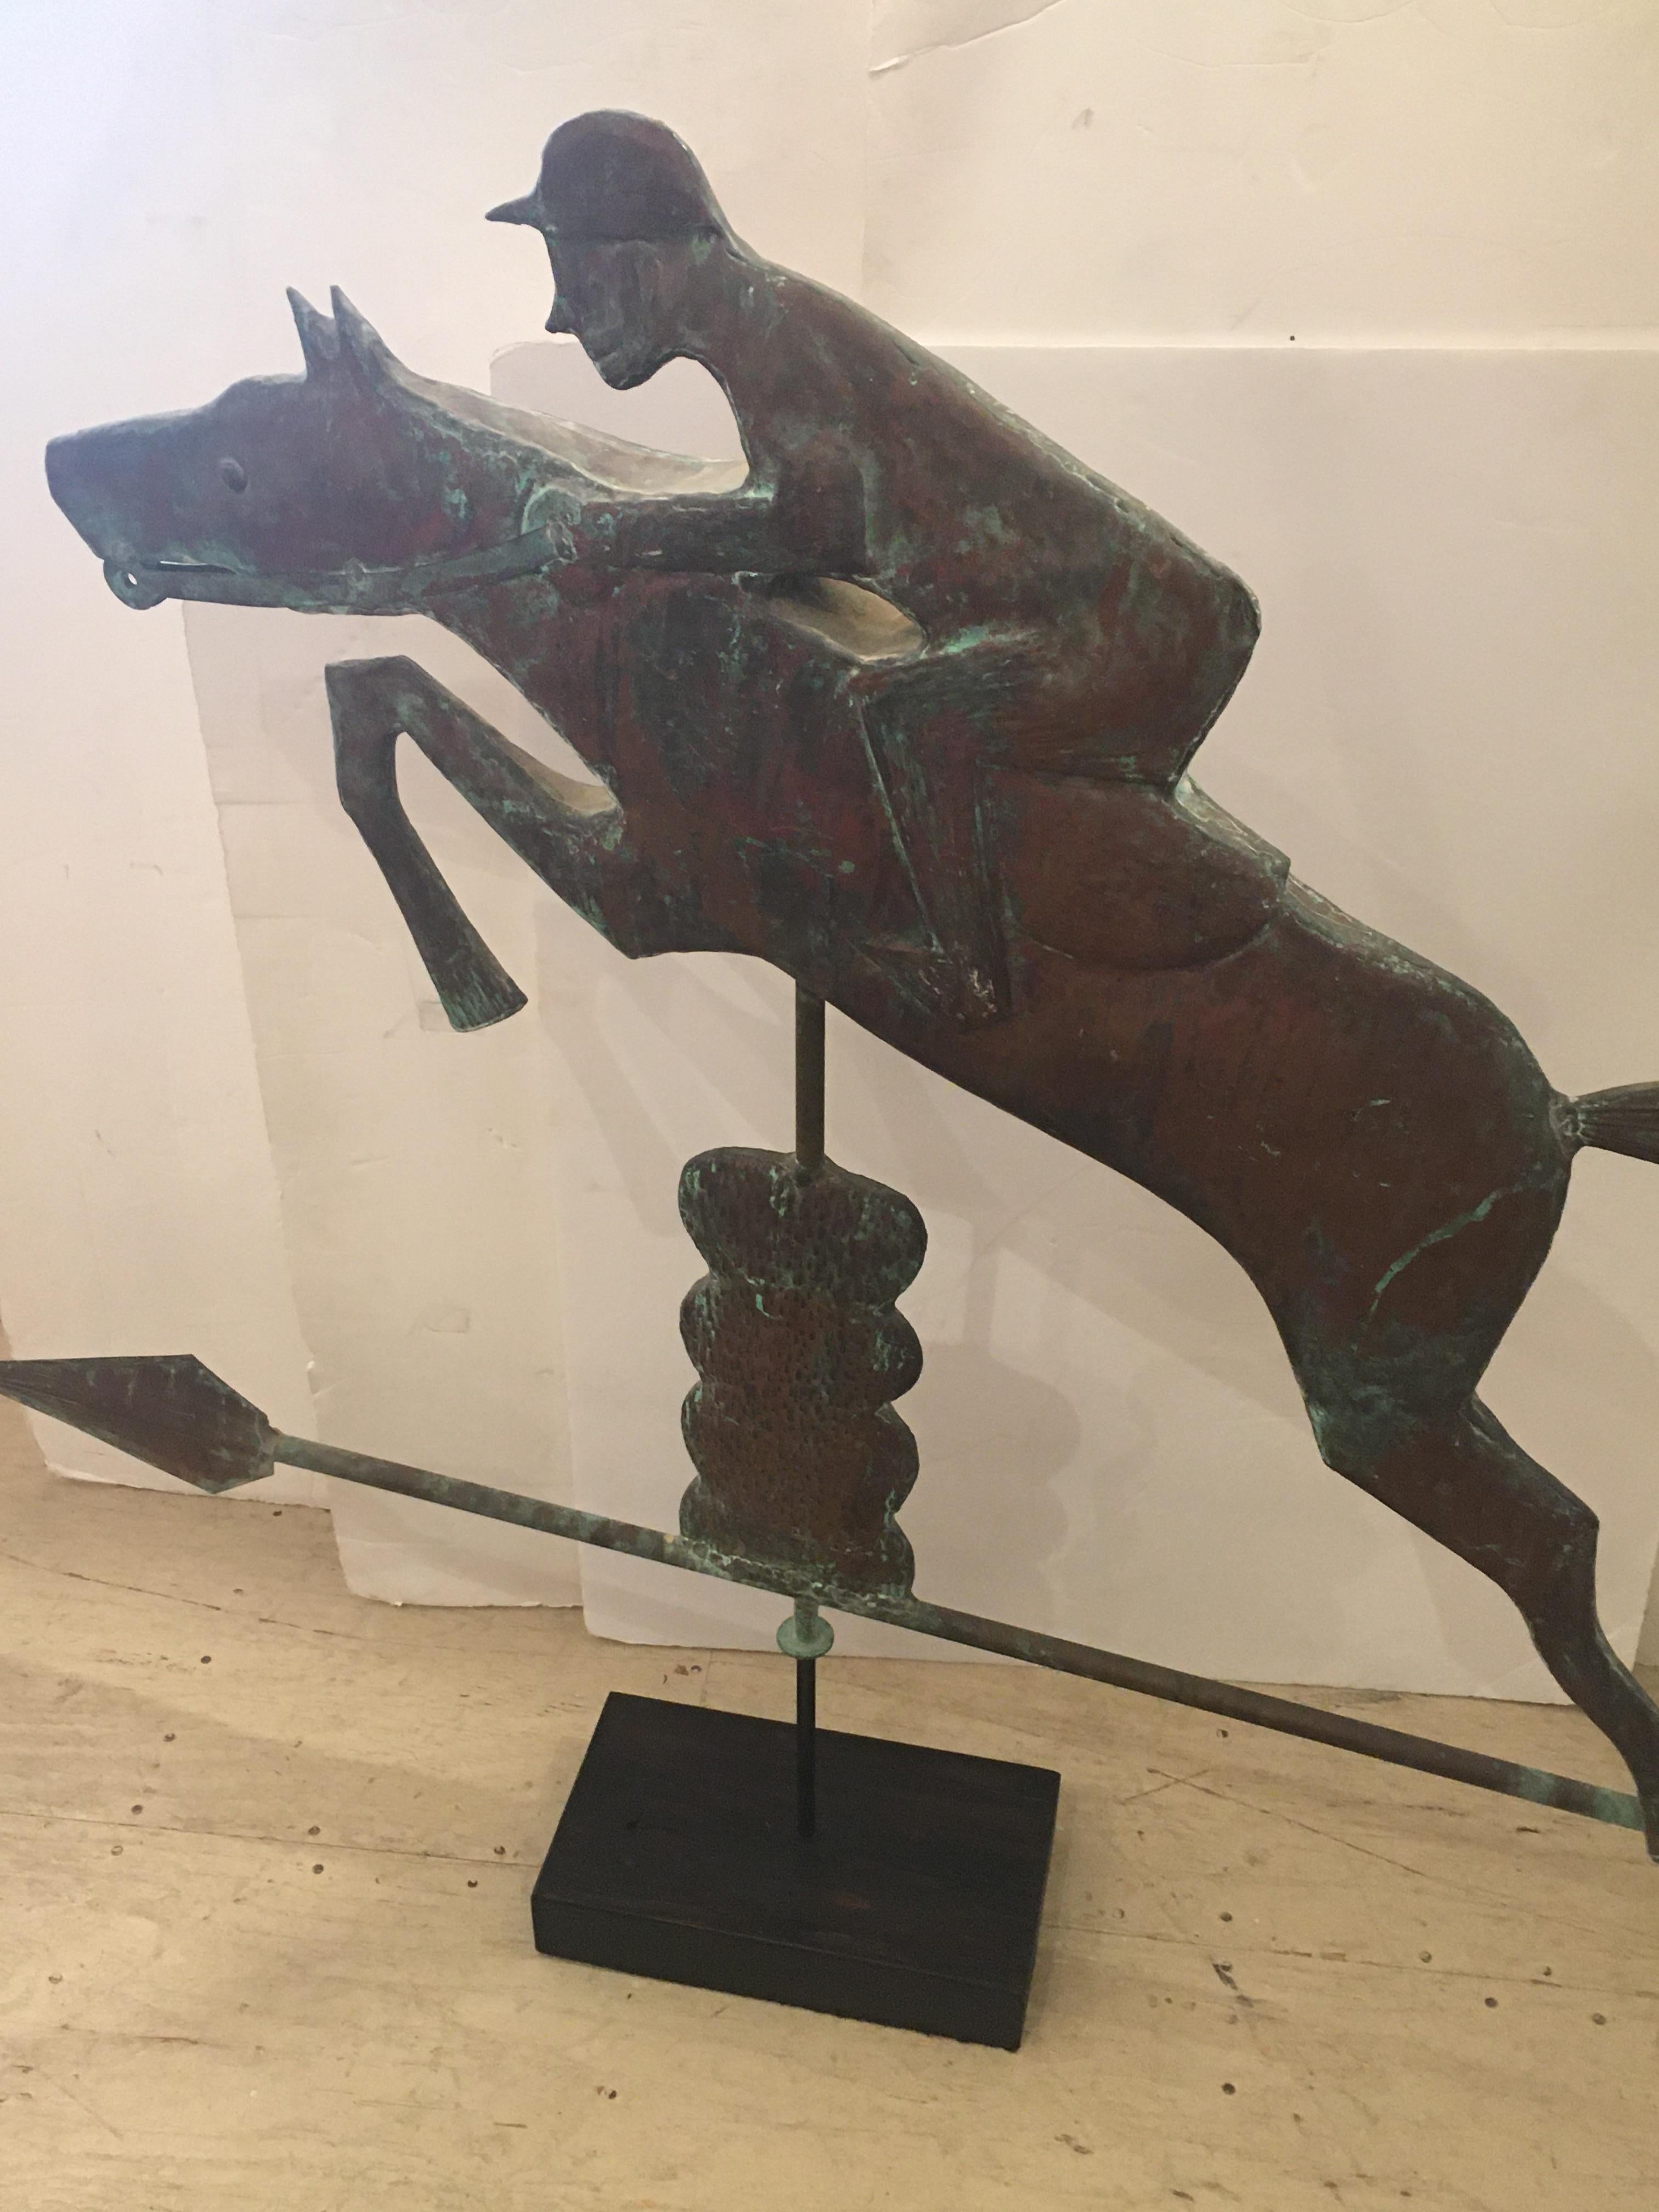 Pferd und Jockey riesige Kupfer-Wetterfahne macht eine monumentale und beeindruckende Skulptur.
  